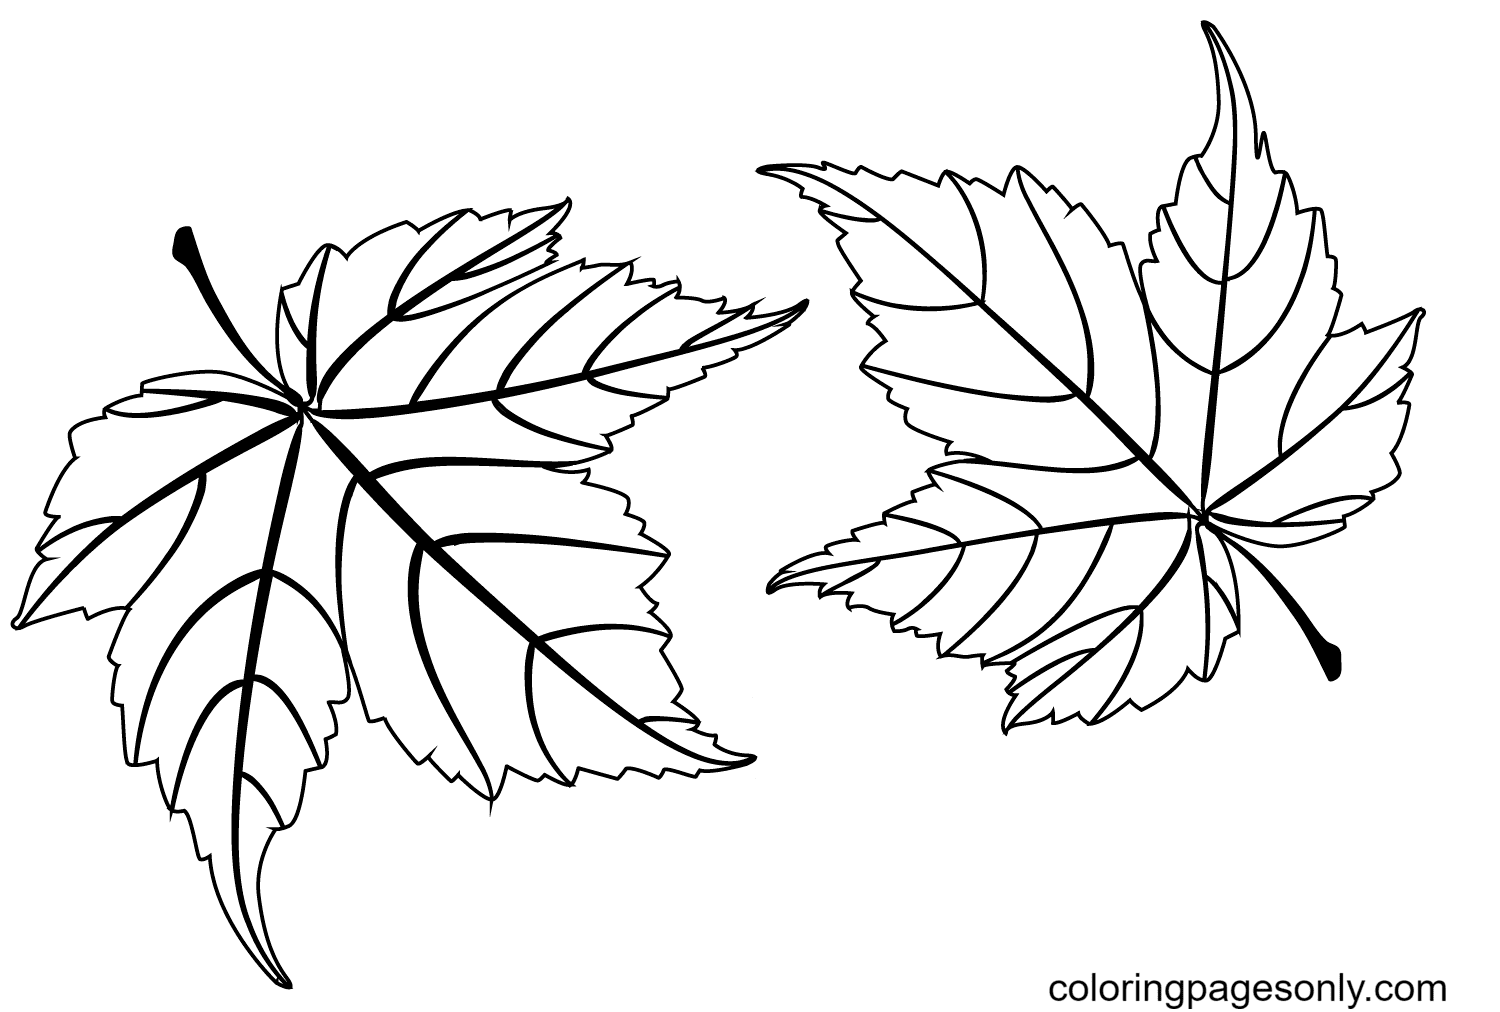 Два кленовых листа из осенних листьев